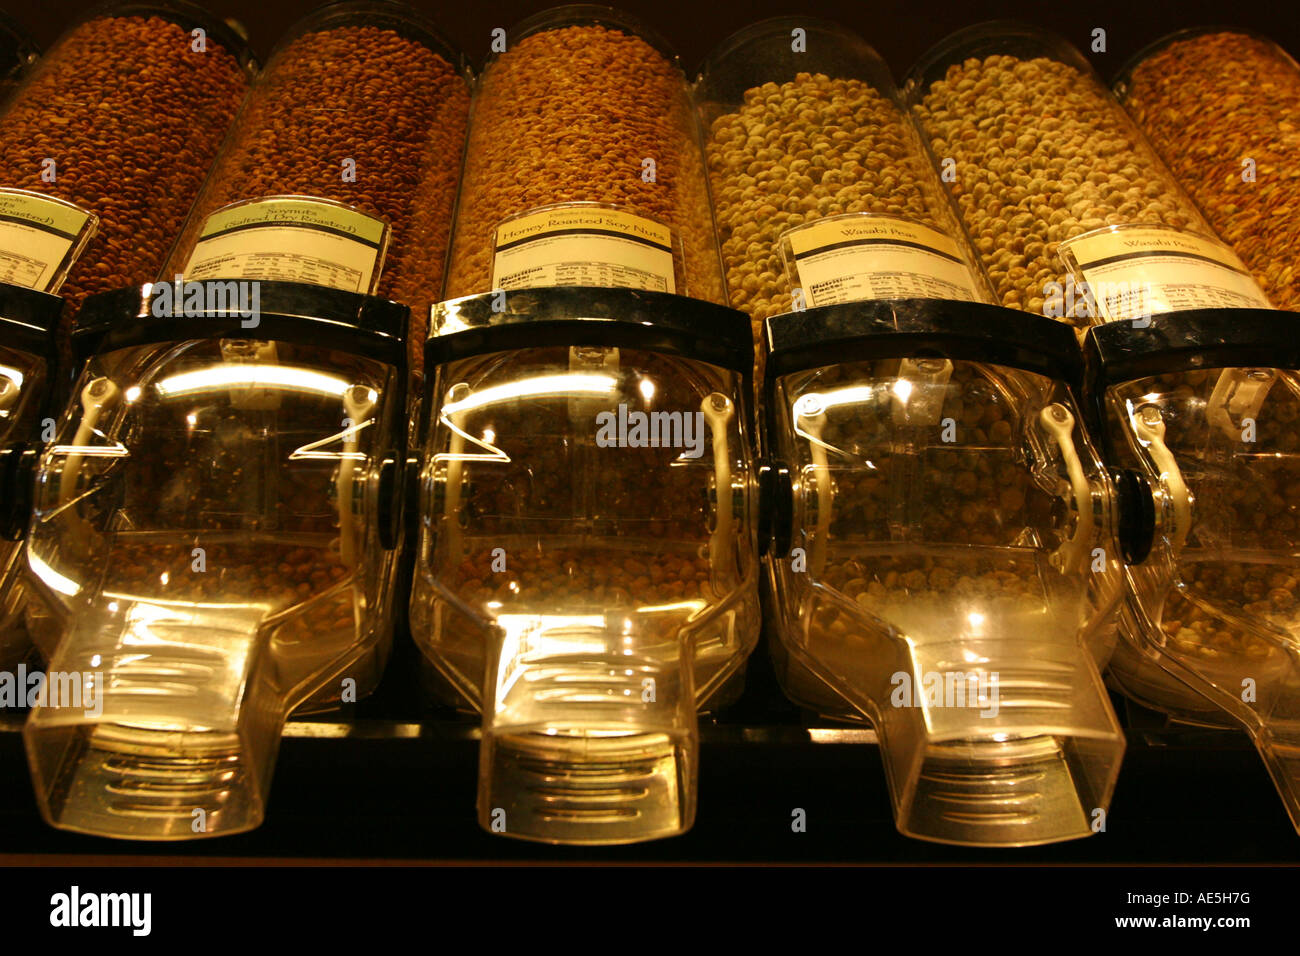 Les écrous et les distributeurs de céréales dans un magasin d'aliments Banque D'Images